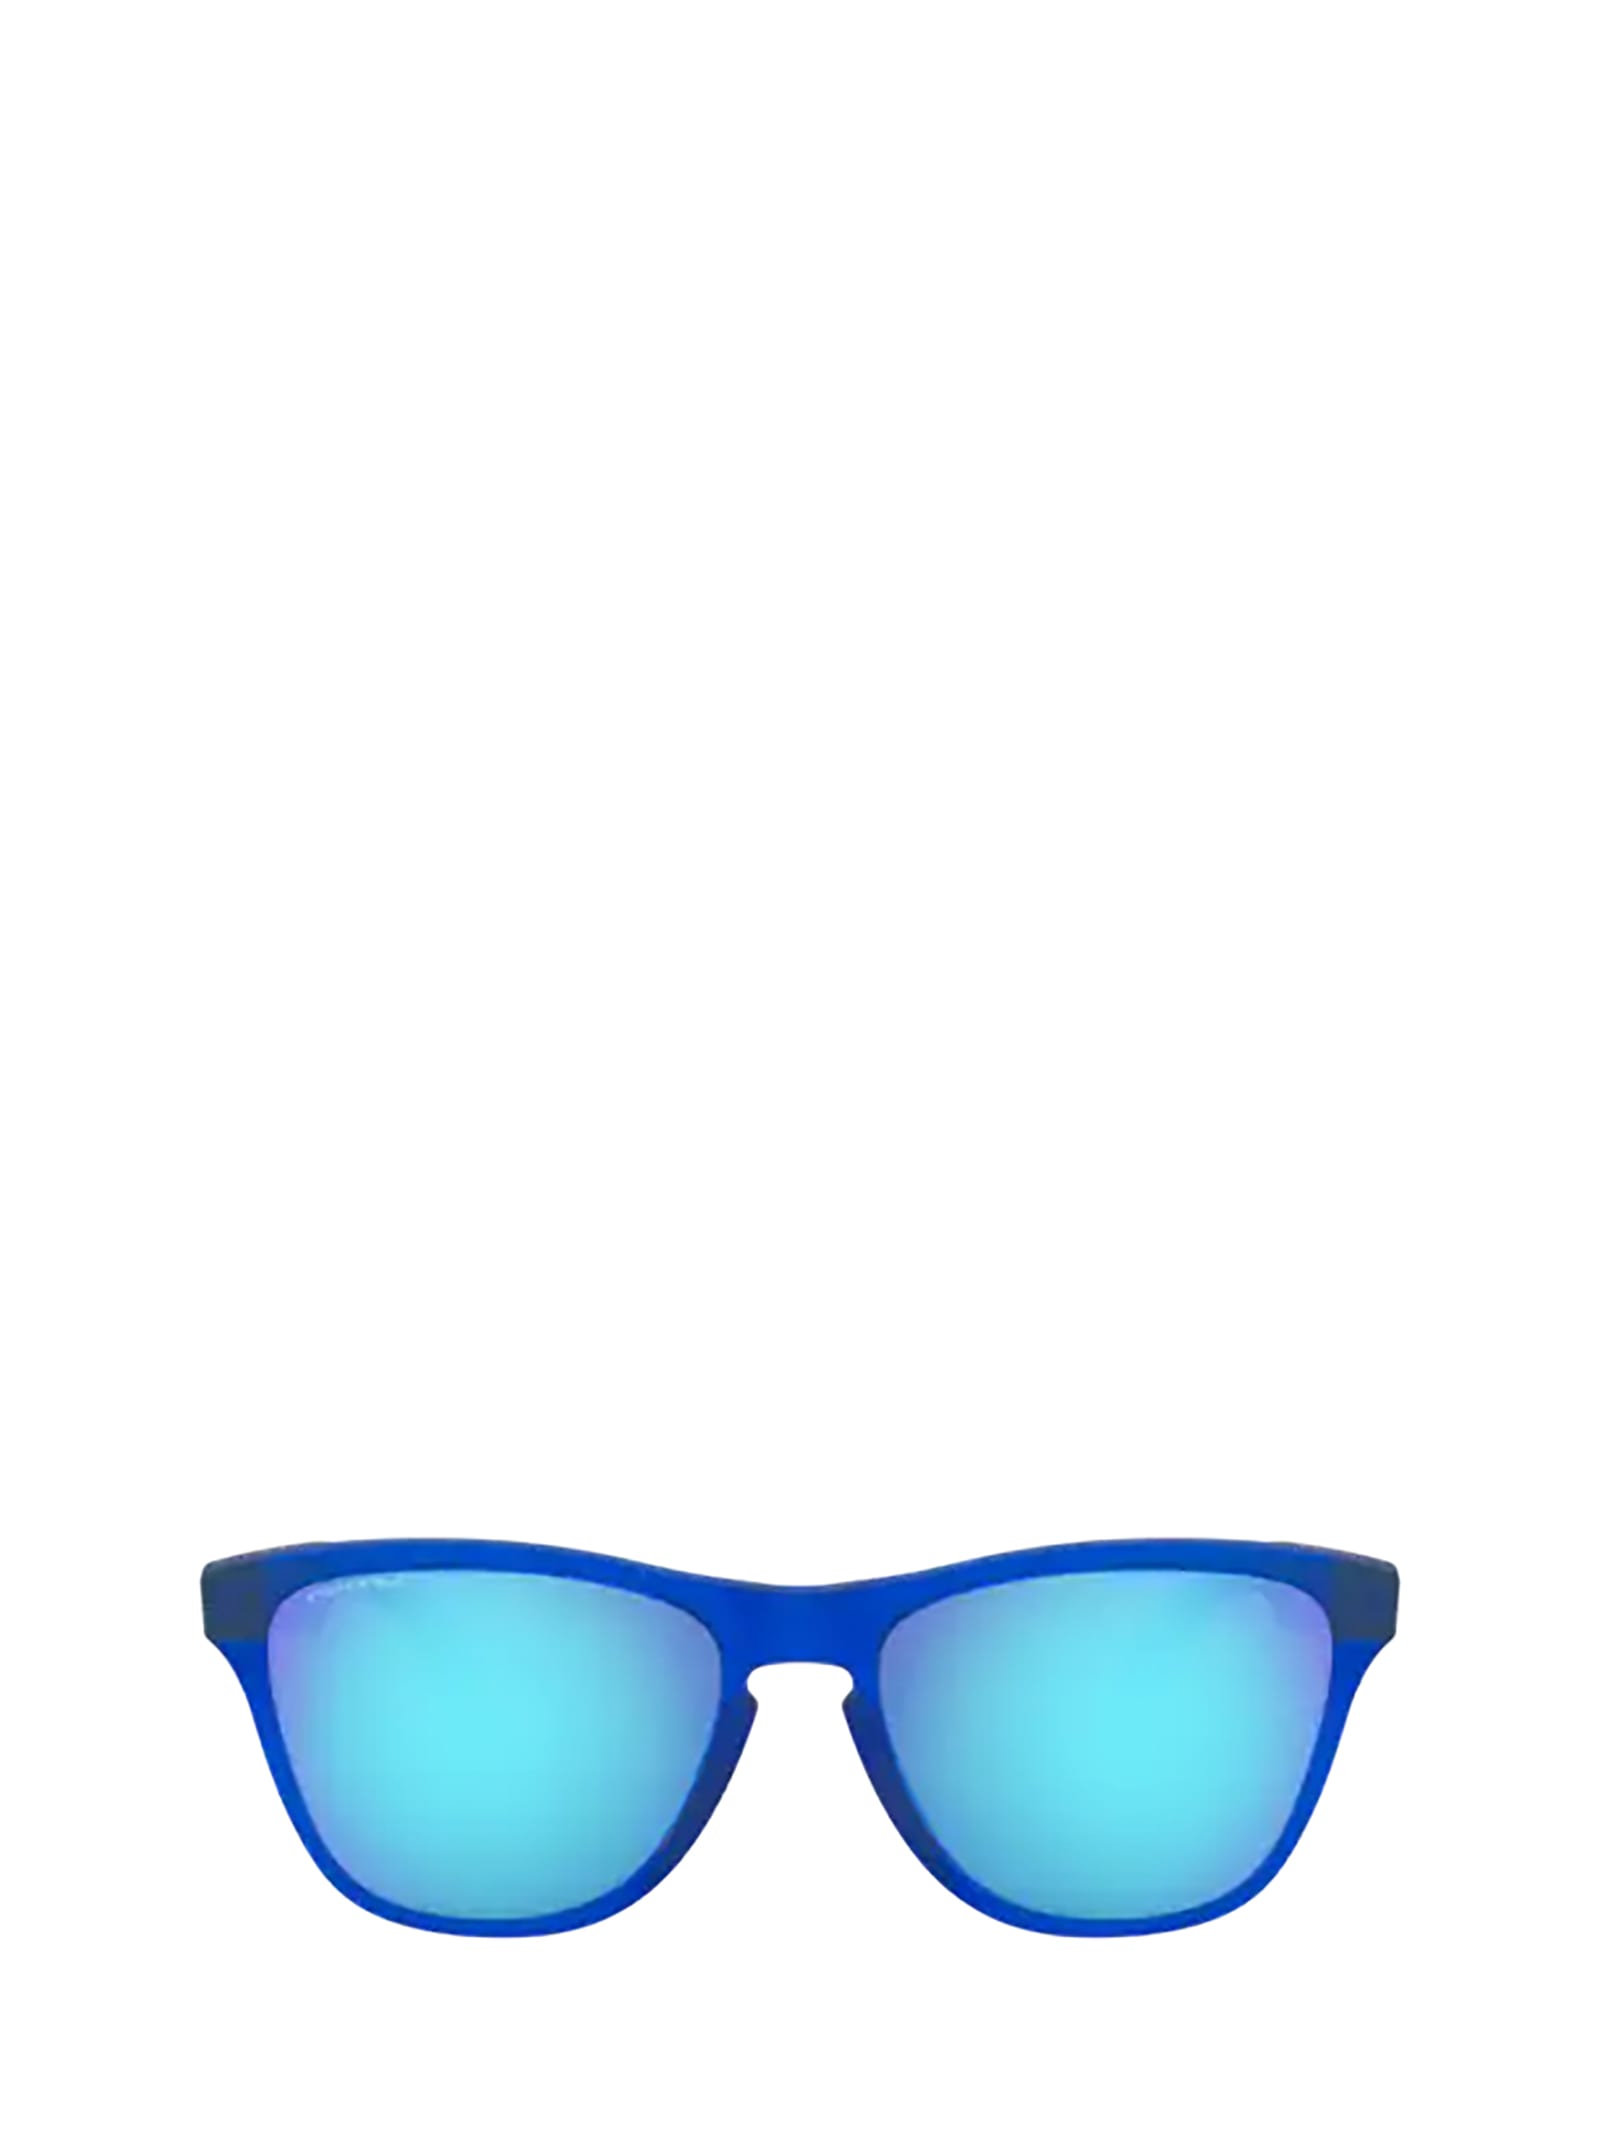 Oakley Oj9006 Matte Translucent Sapphire Sunglasses